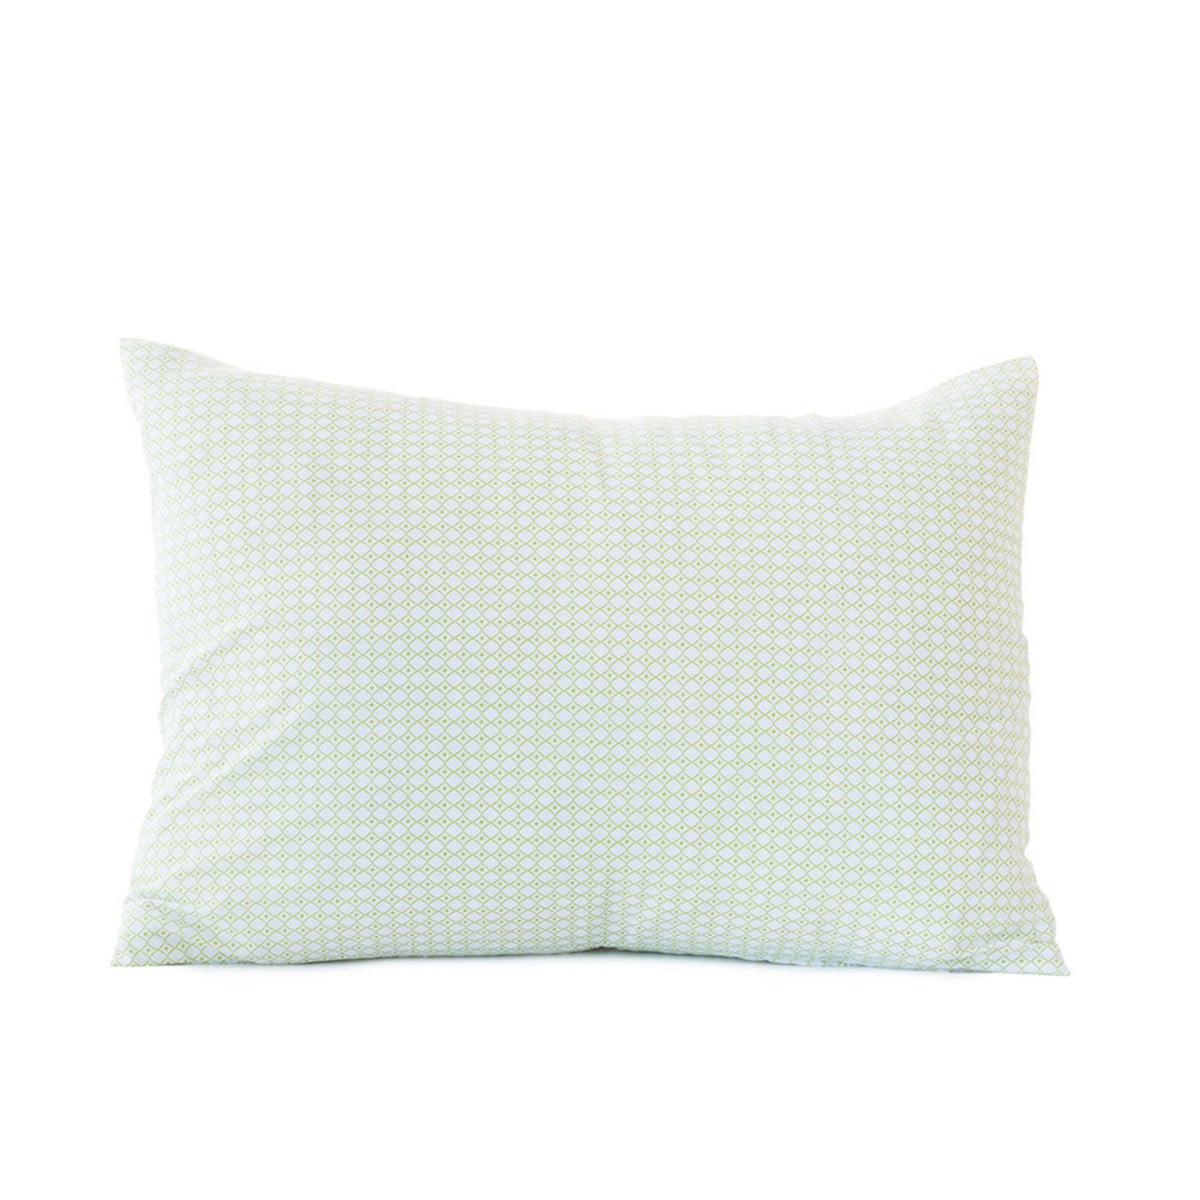 Petite Diamond Organic Boudoir Pillow Cover, 16"L x 22"W